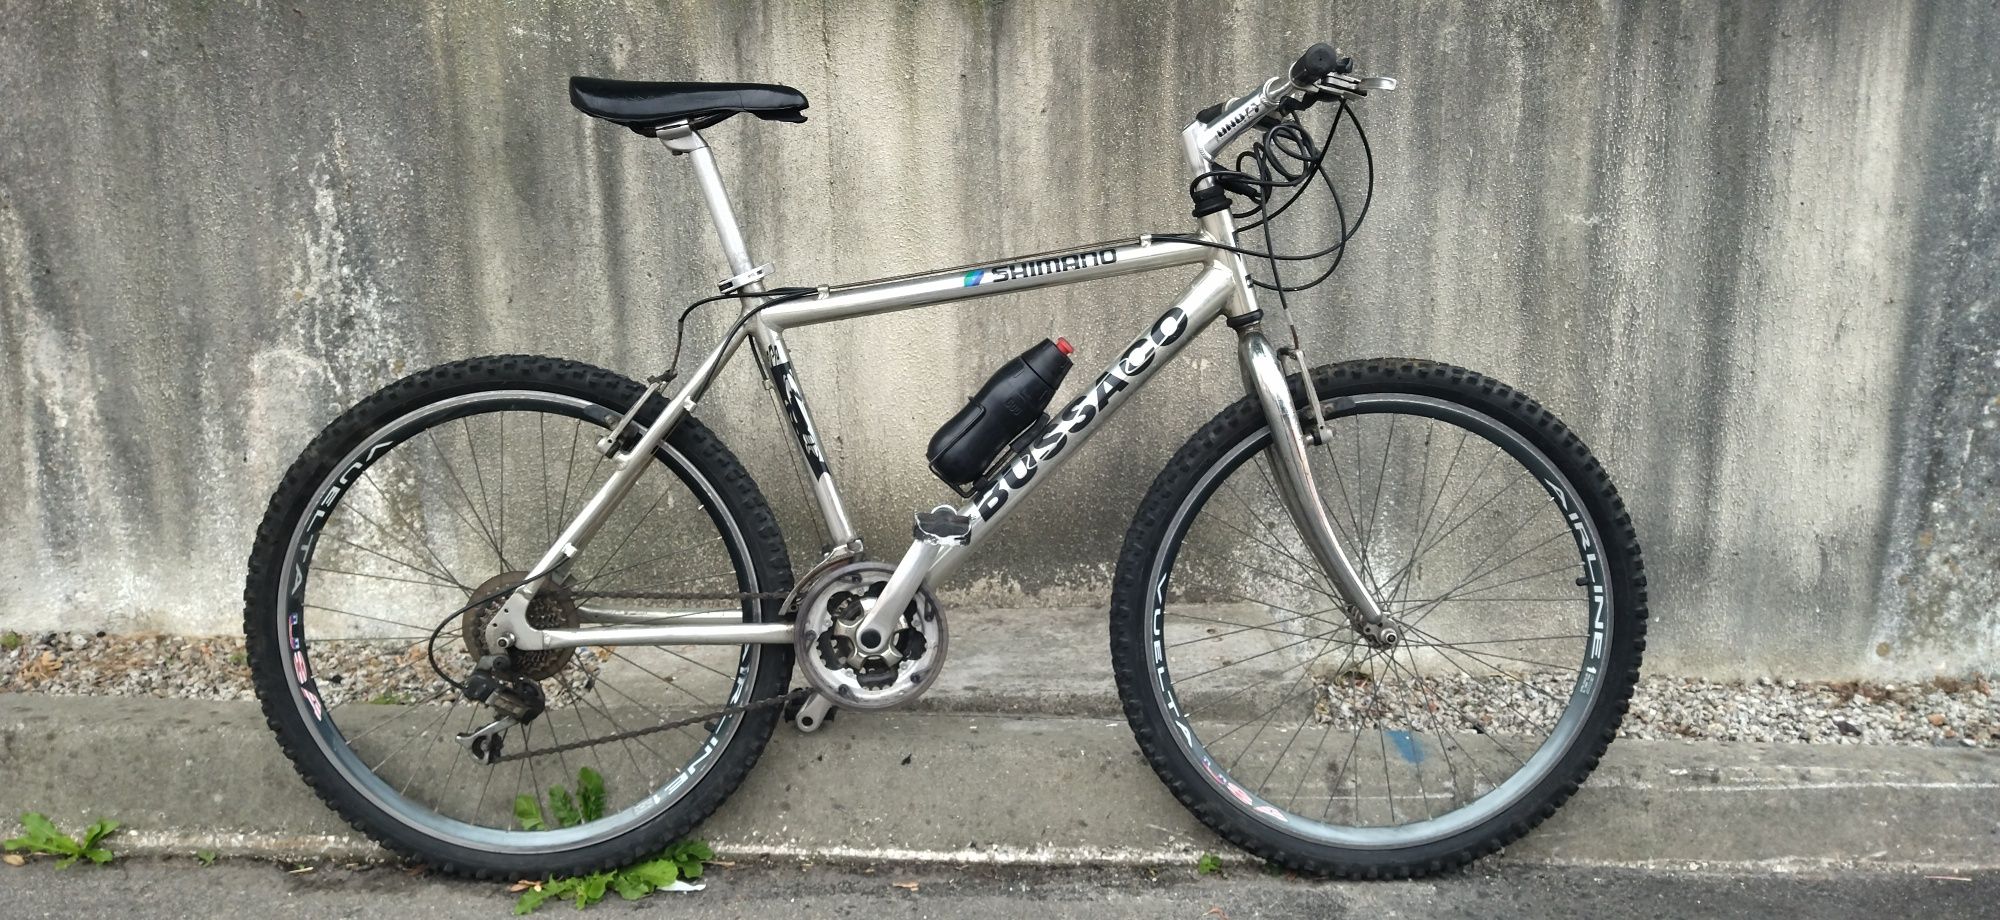 Bicicleta Shimano Bussaco de alumínio